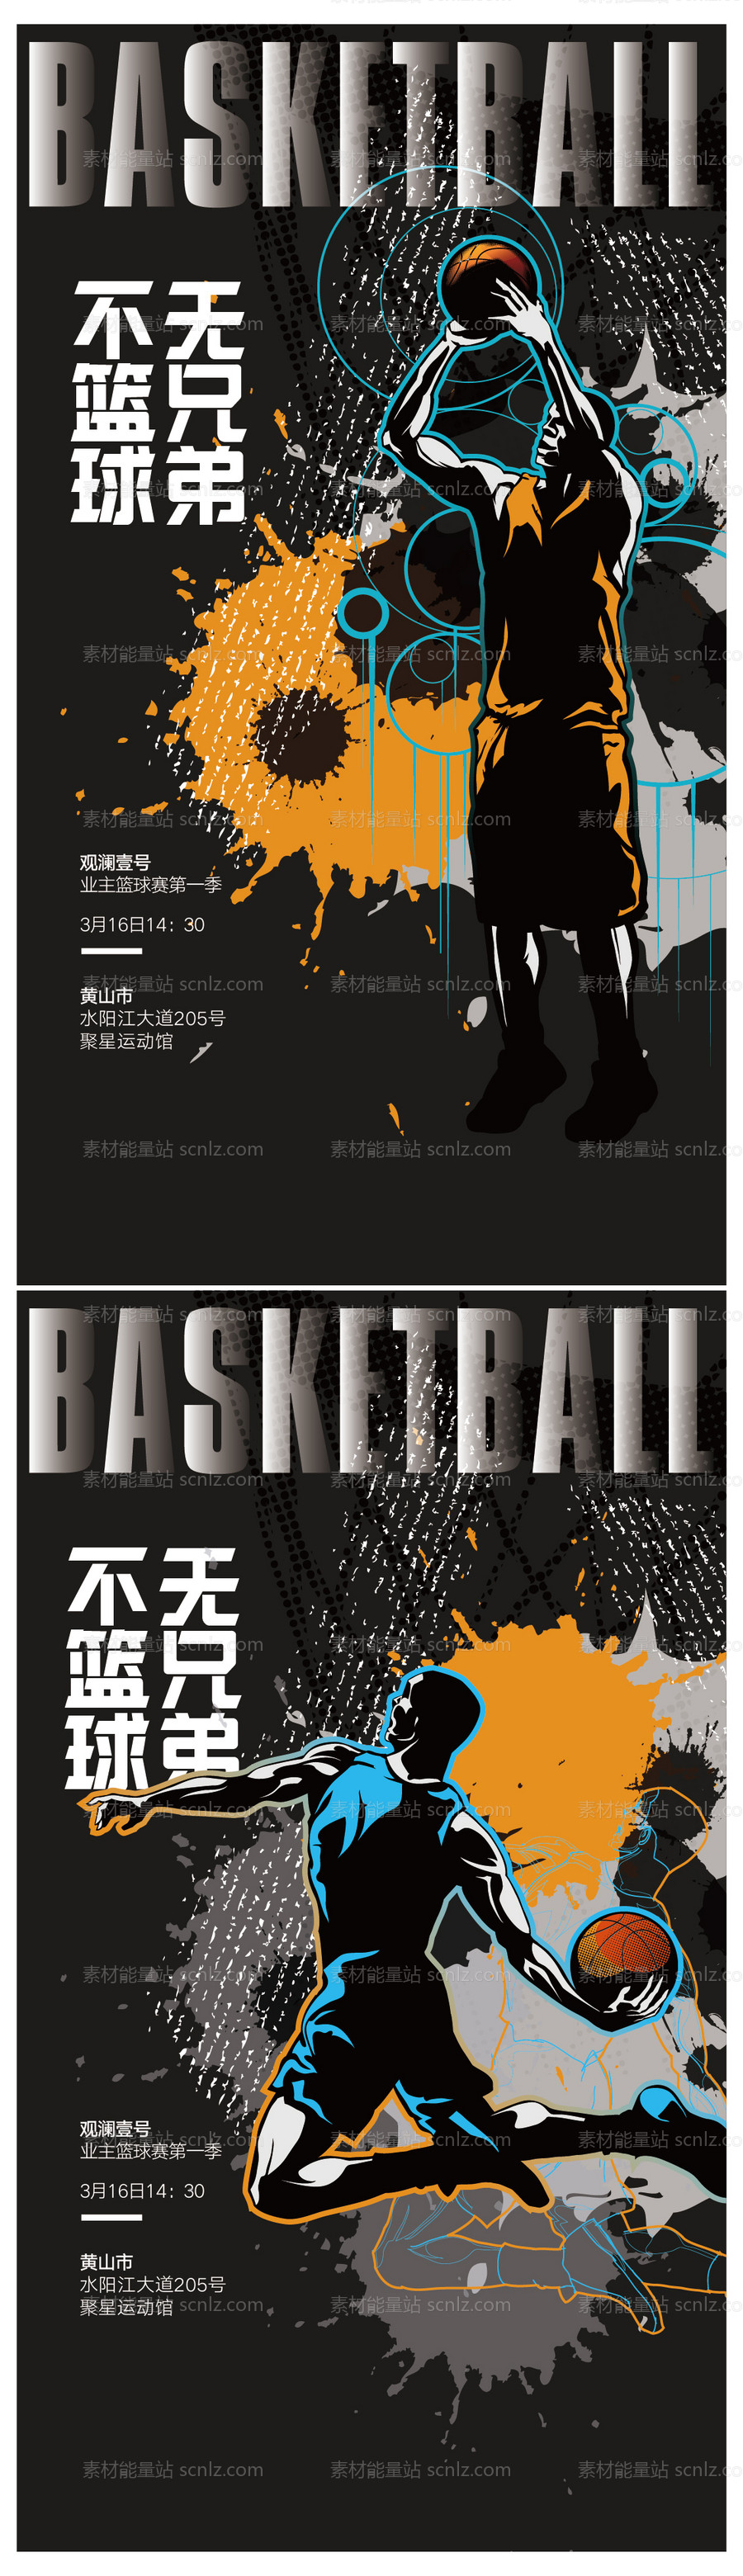 素材能量站-篮球赛活动海报